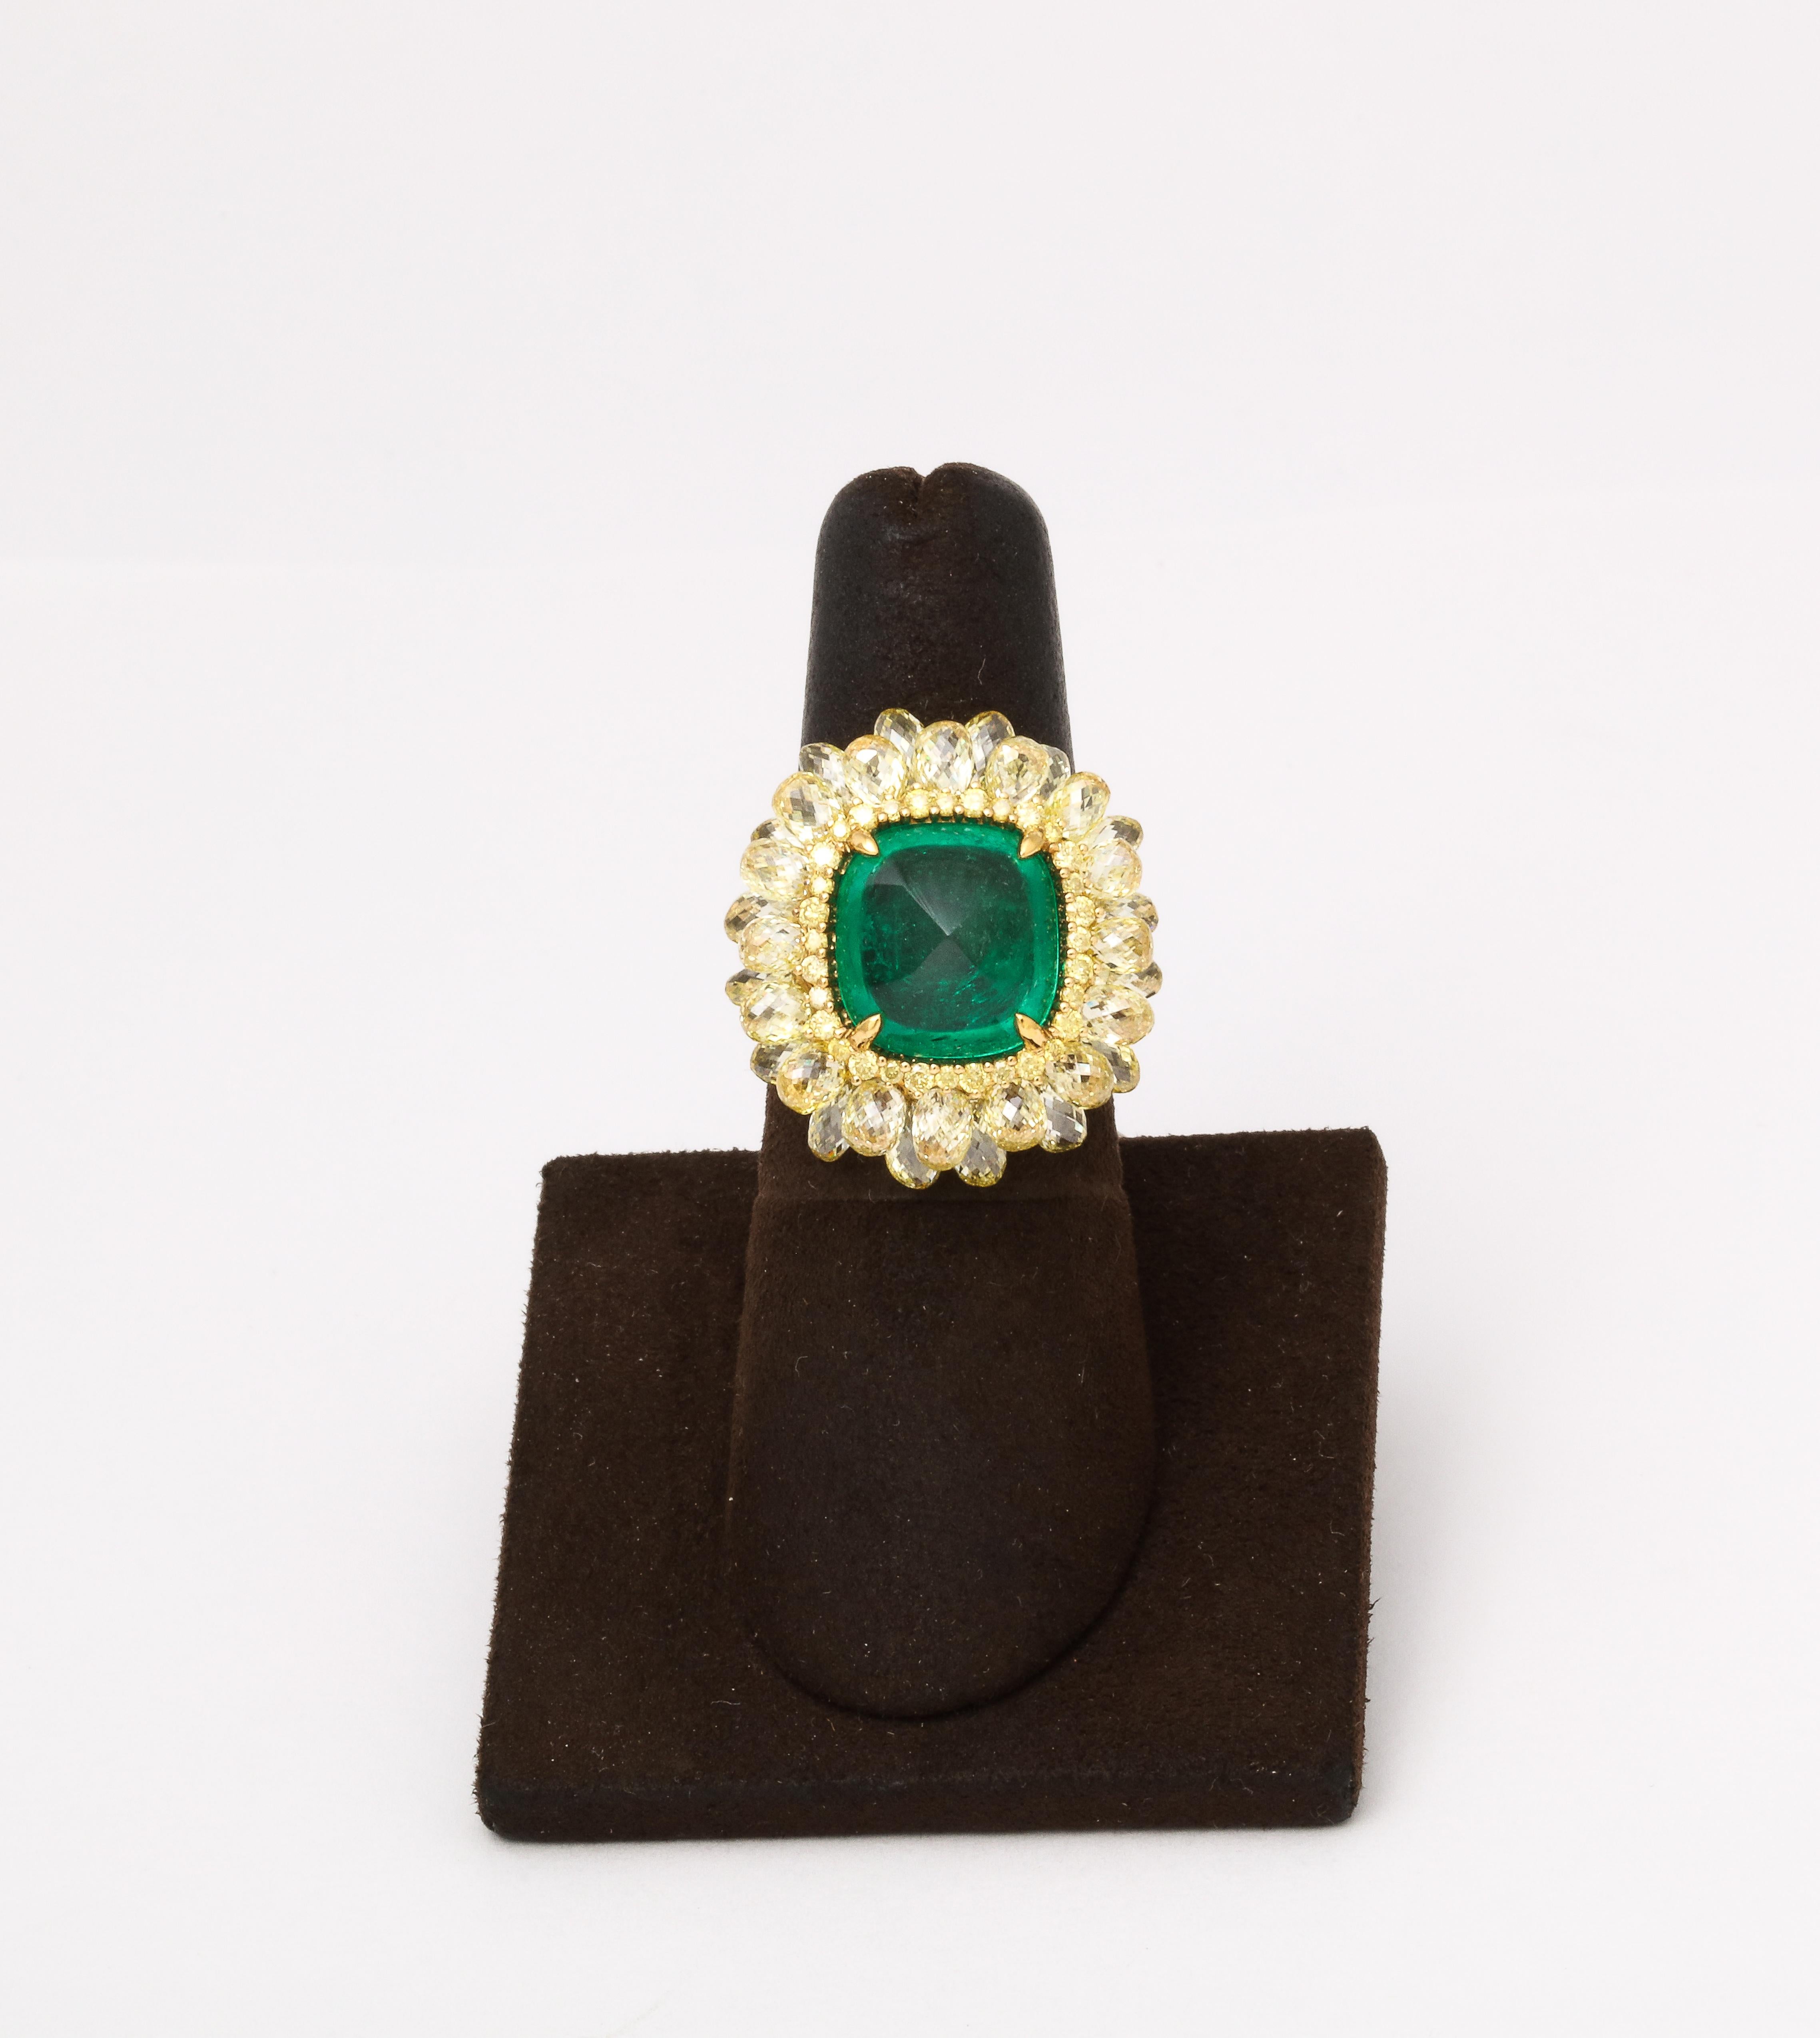 
EIN KUNSTWERK! 

Makellos gestalteter Ring mit 5,59 Karat kolumbianischem Zuckerhut-Cabochon-Smaragd. 

Der Ring ist mit 10,85 Karat gelben Diamanten im Briolette- und runden Brillantschliff besetzt, die alle in 18 Karat Gelbgold gefasst sind.